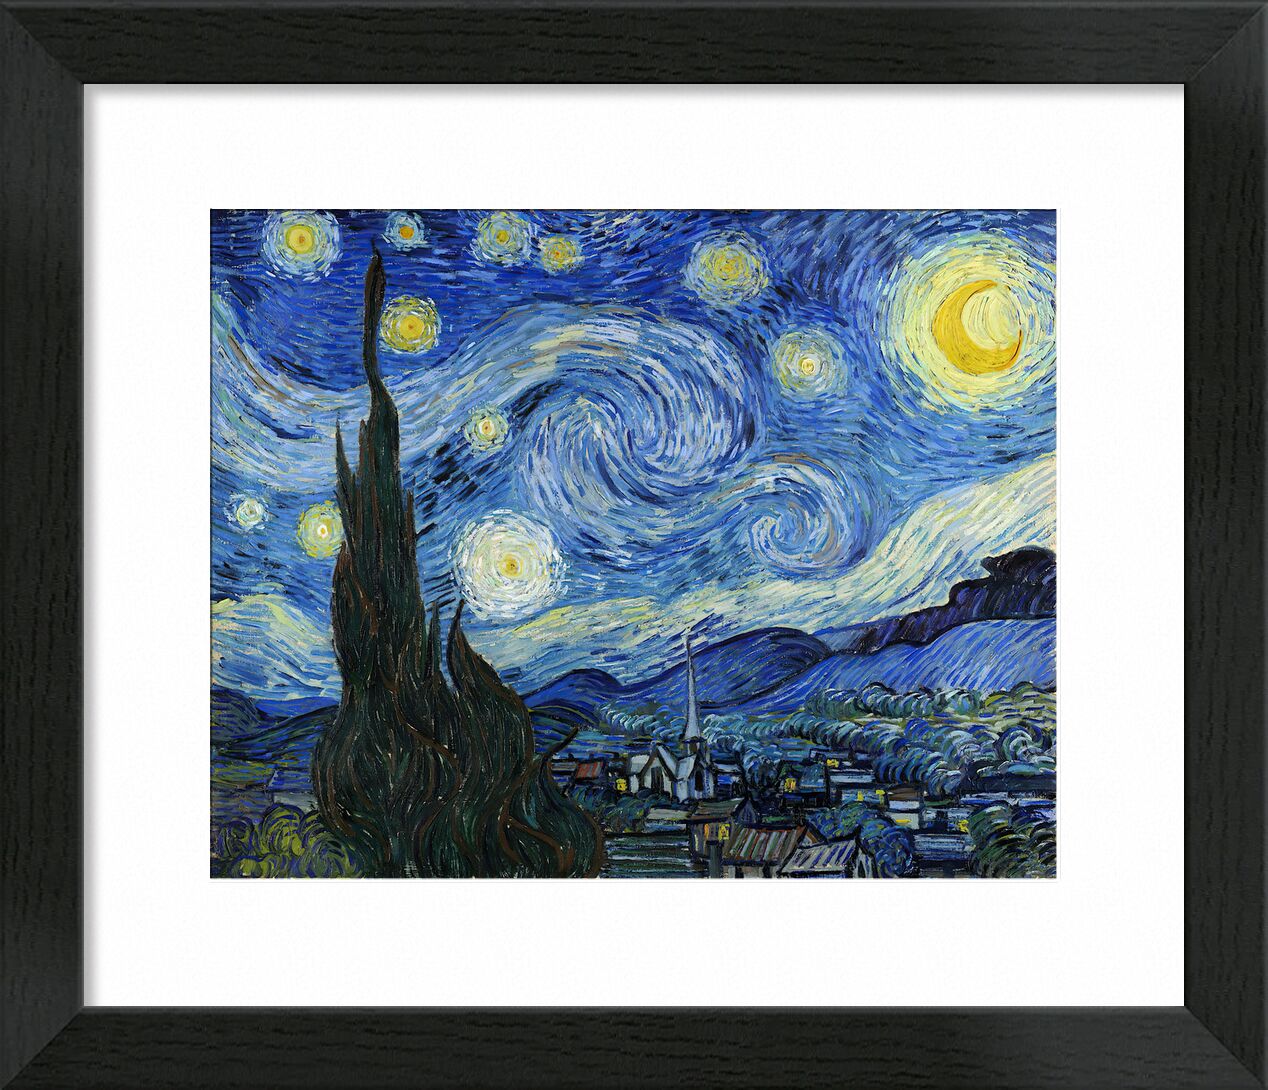 The Starry Night - VINCENT VAN GOGH 1889 desde Bellas artes, Prodi Art, VINCENT VAN GOGH, astrait, pintura, pueblo, árbol, estrellas, noche, montañas, Valle